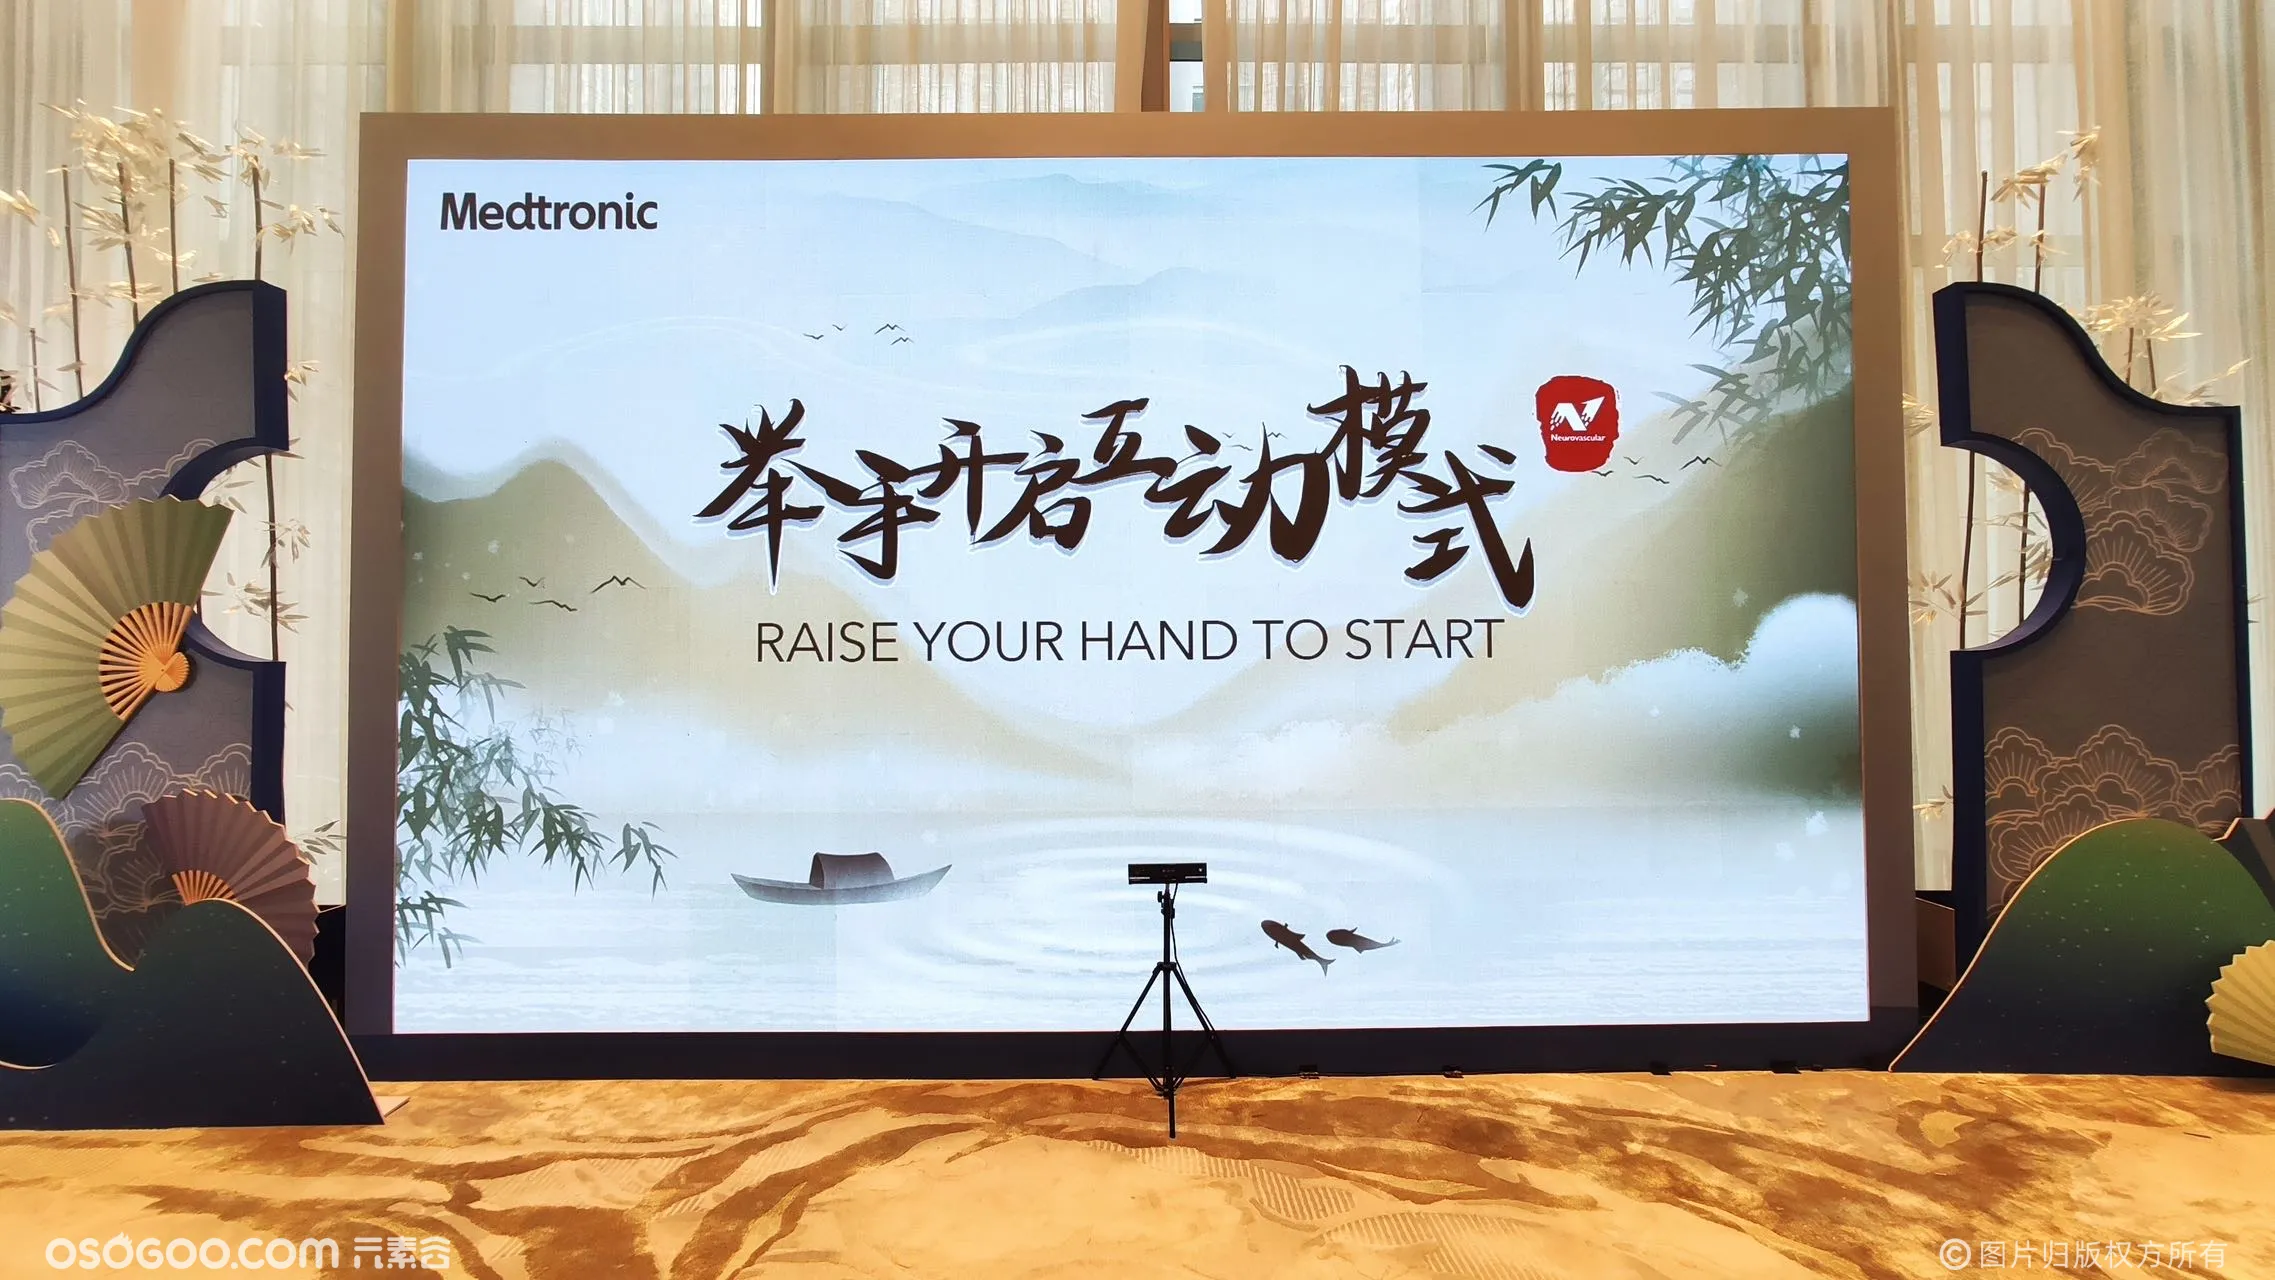 上海站医疗大会体感漫画拍照互动装置